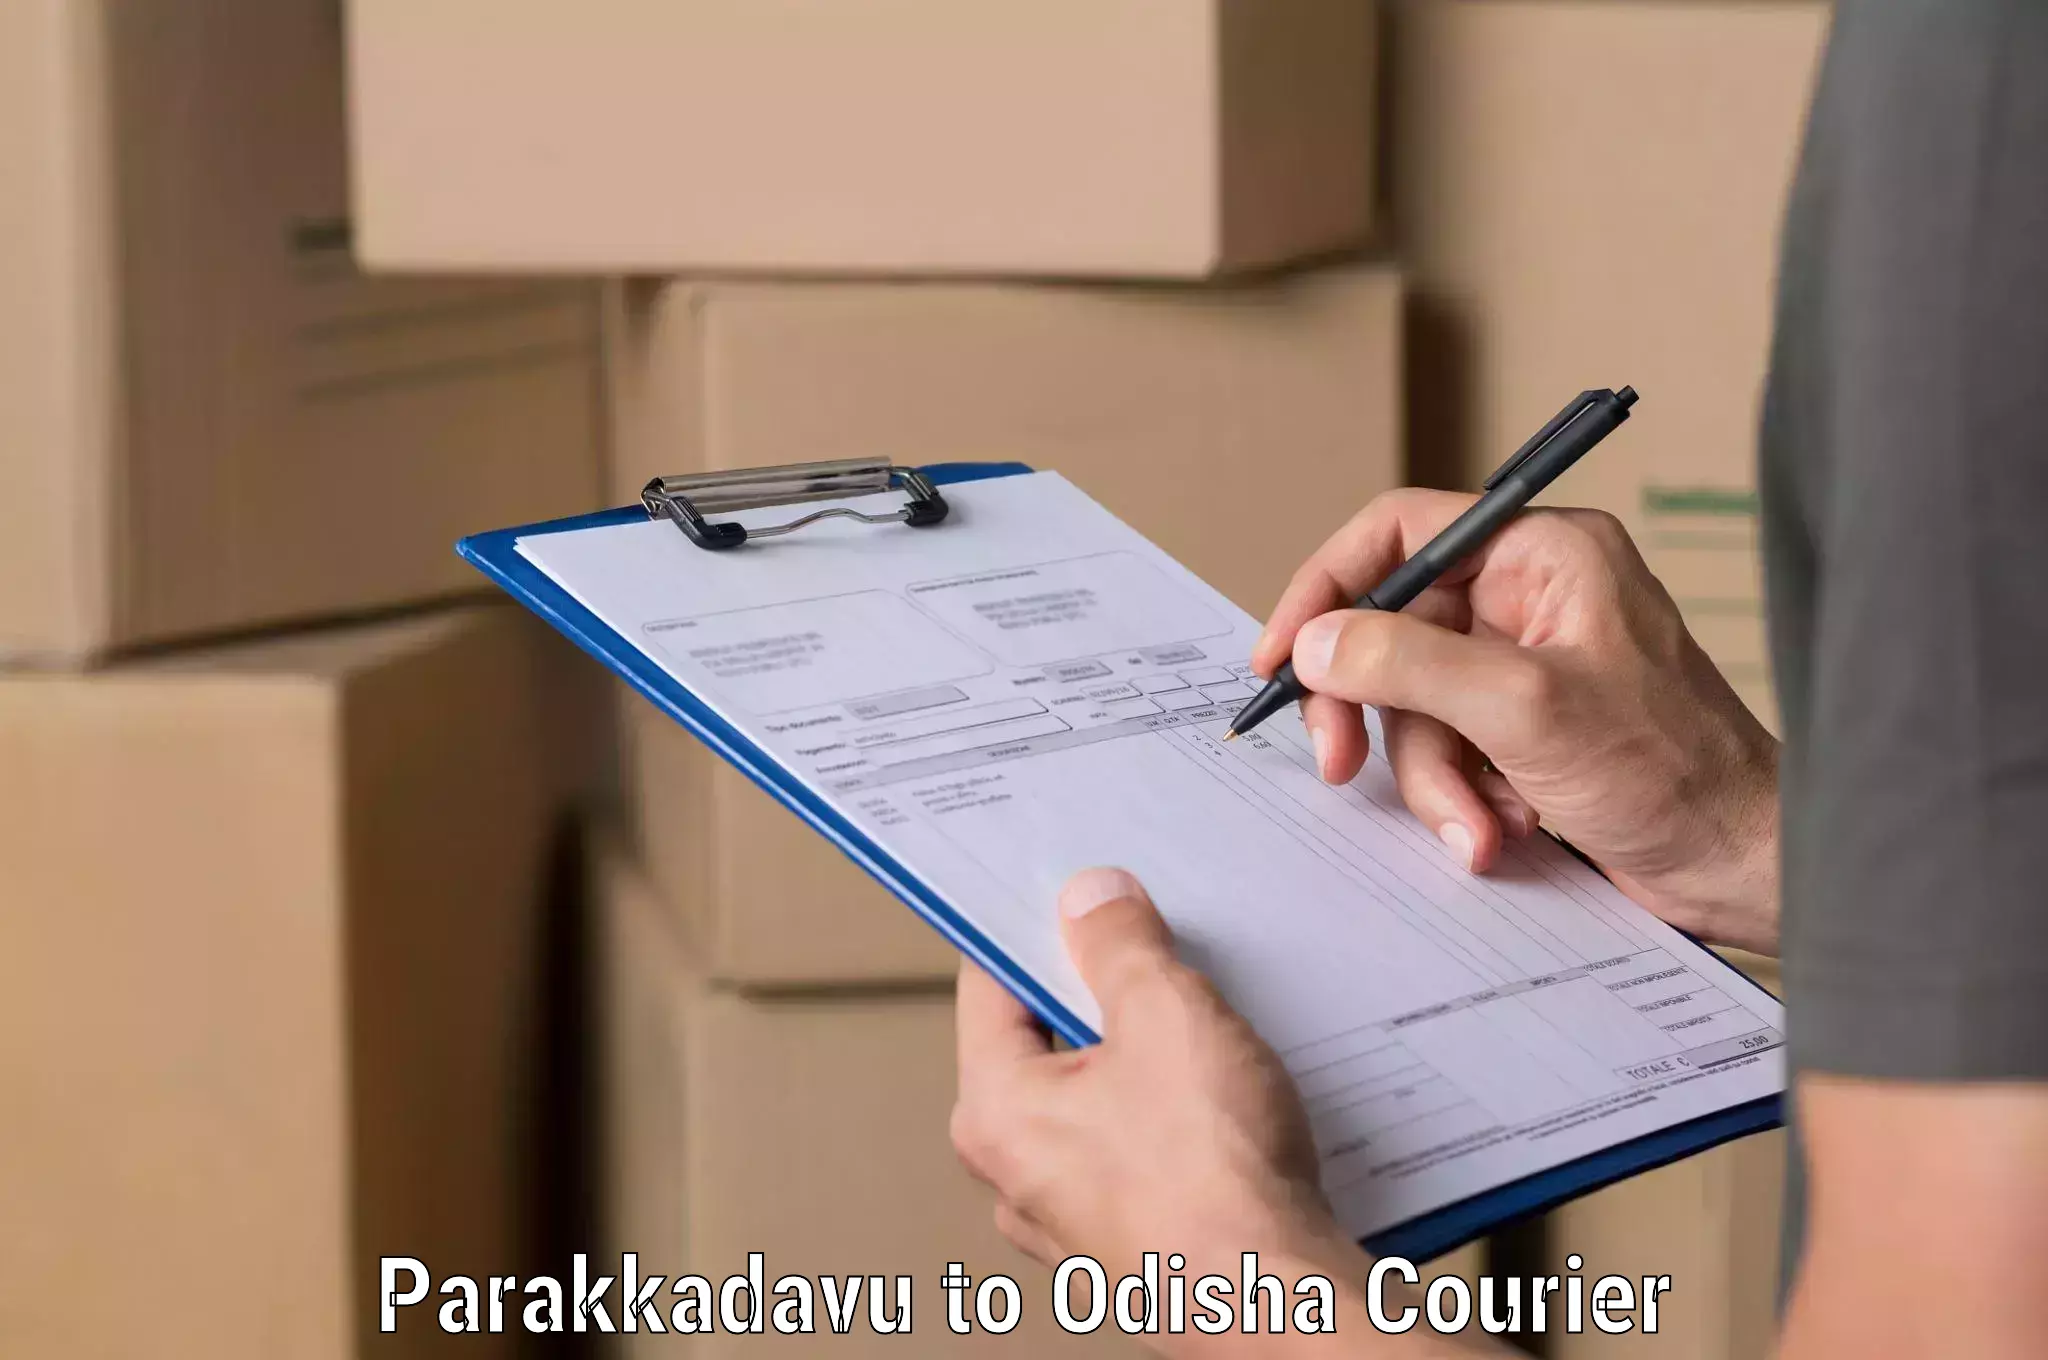 Business courier solutions Parakkadavu to Odisha